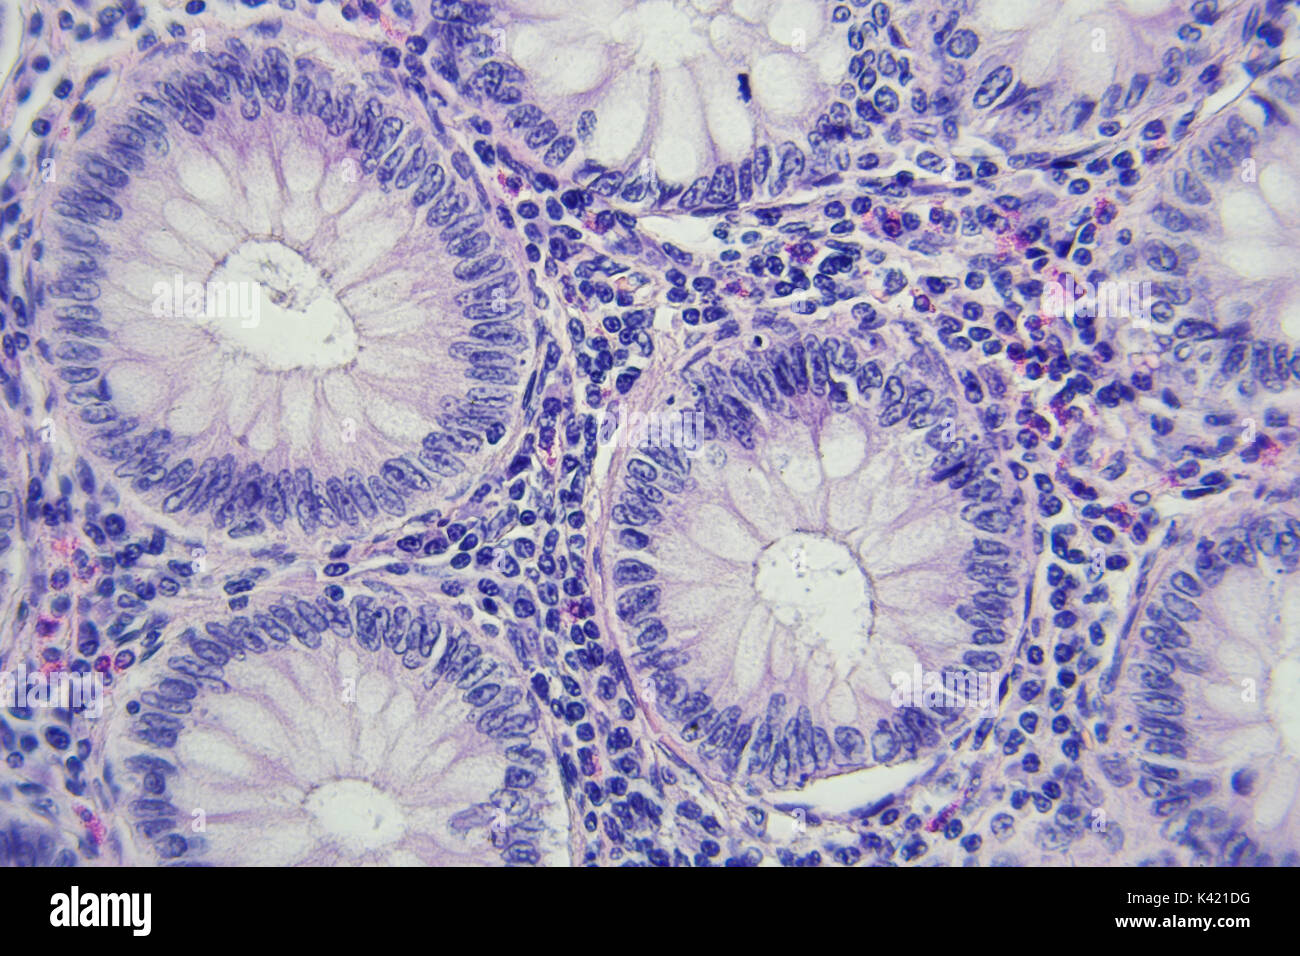 Il cancro del colon fotografia microscopica, ingrandimento x400 Foto Stock